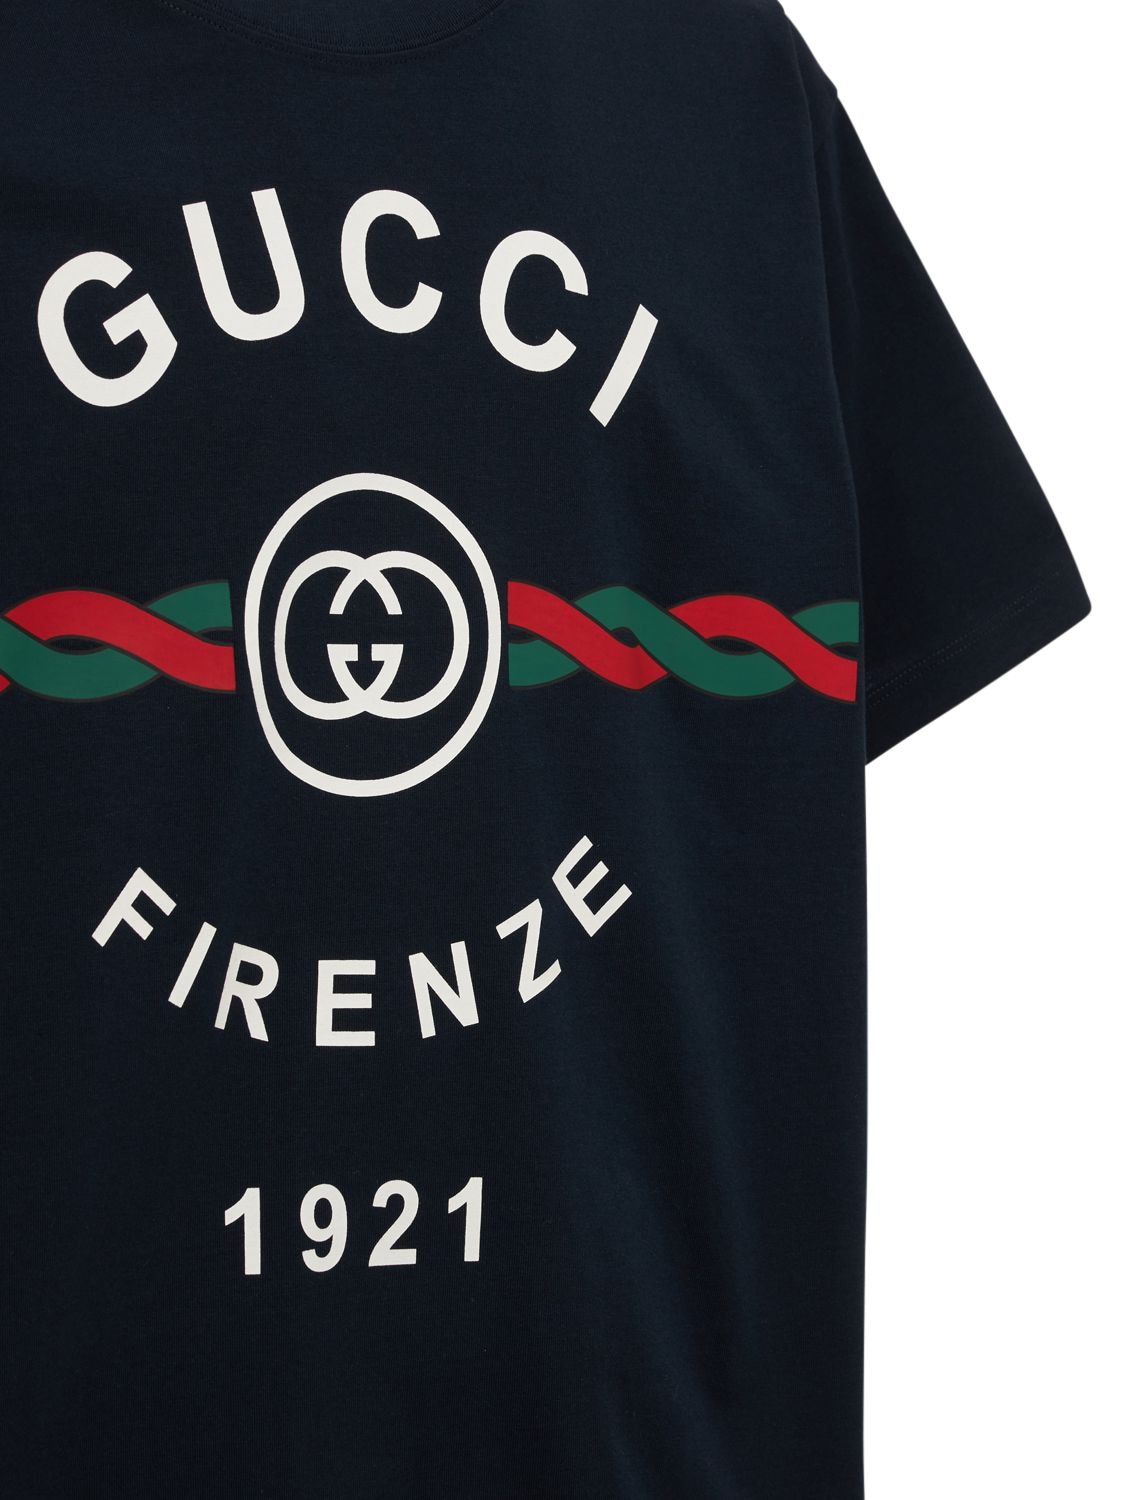 Gucci Navy 'Gucci Firenze 1921' T-Shirt